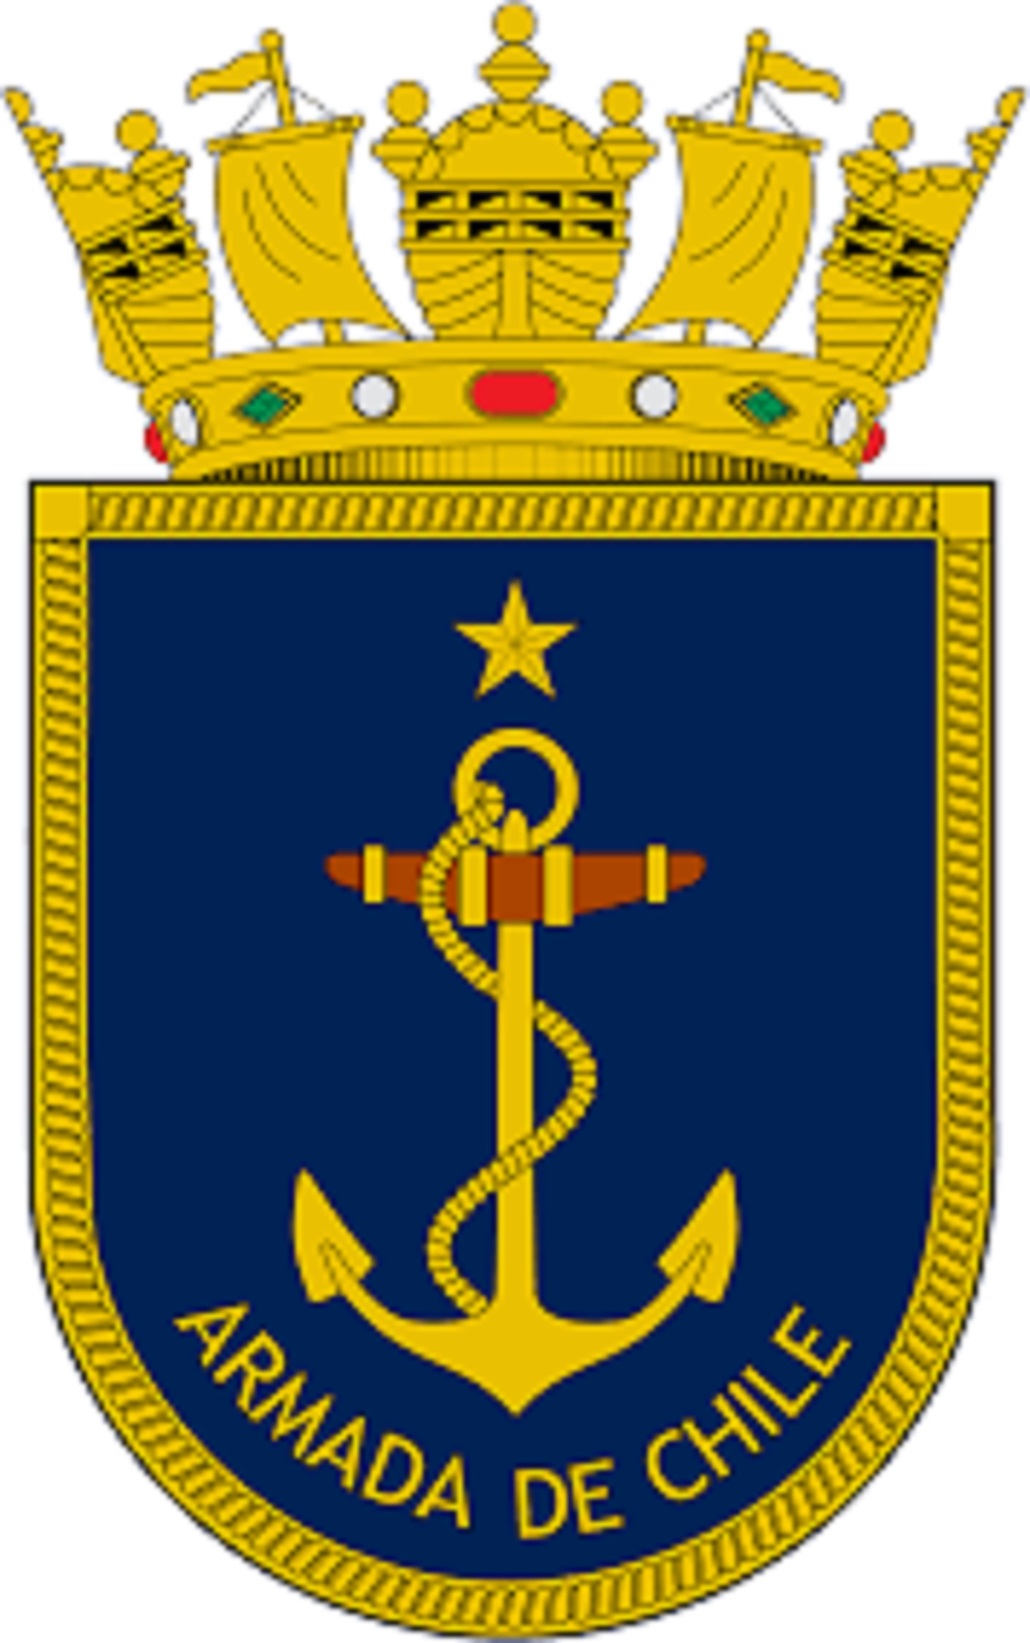 El nuevo Comandante en Jefe de la III Zona Naval será el Contraalmirante Sr. Ronald Baasch Barberis